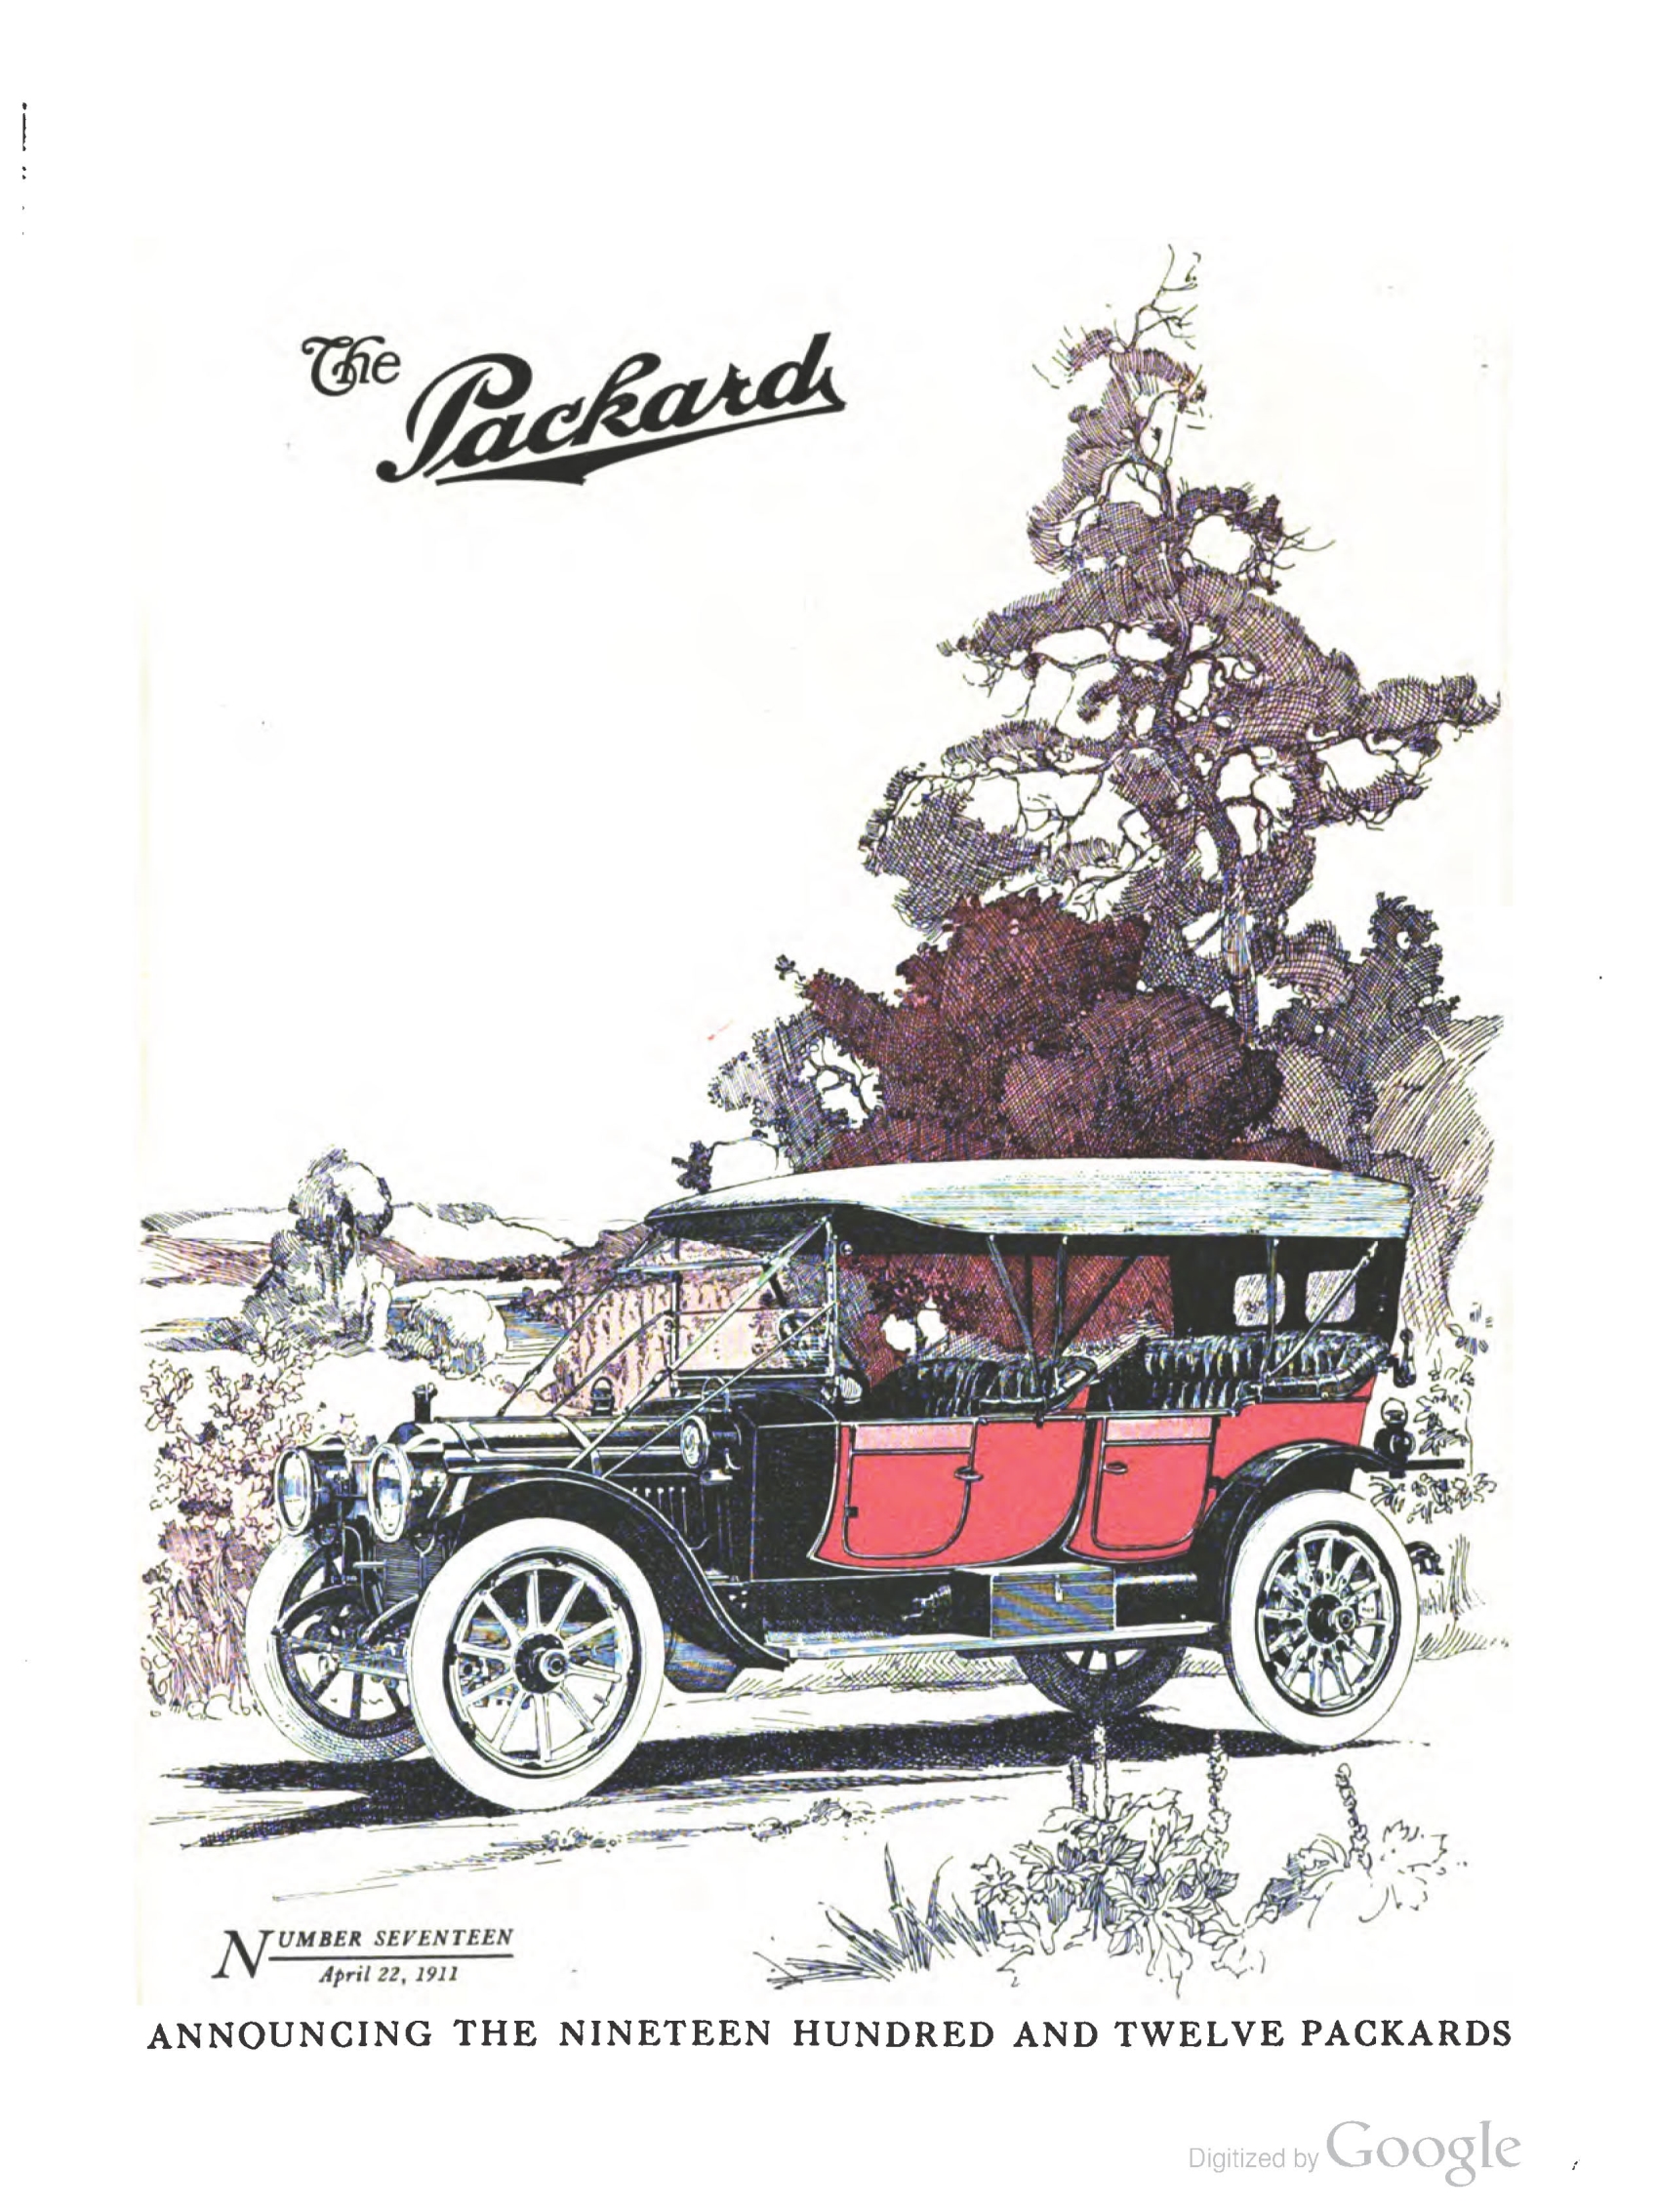 1911_The_Packard_Newsletter-061